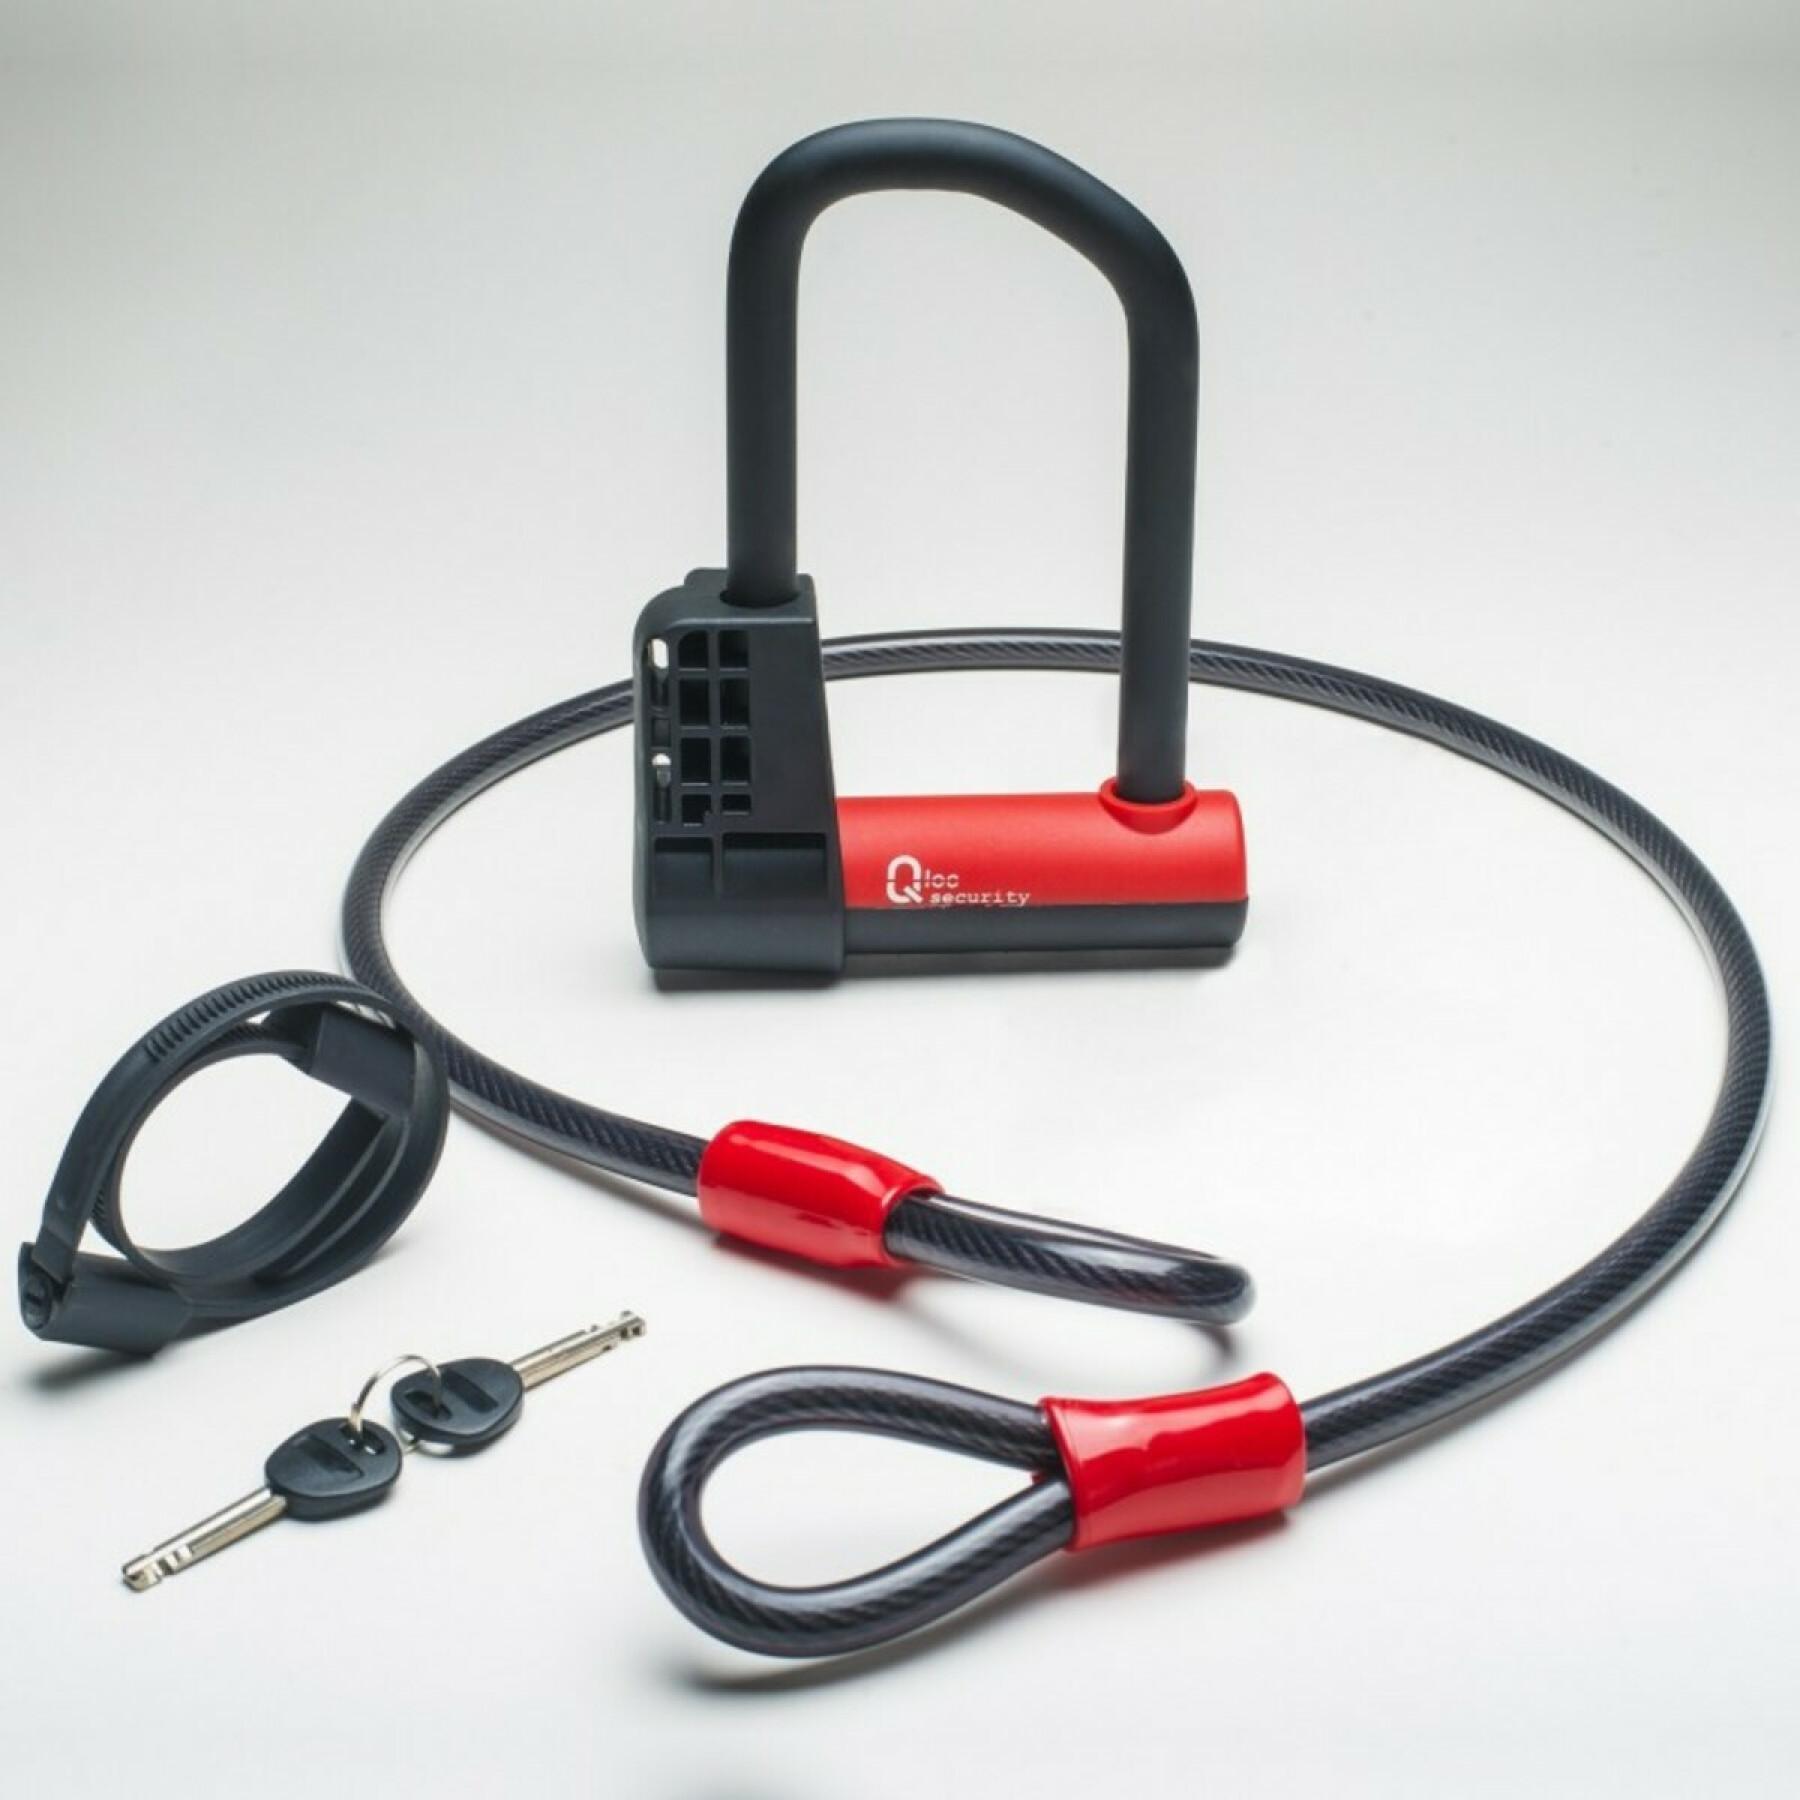 Urządzenie zabezpieczające przed kradzieżą u z uchwytem Qloc Security Ø14 75/150mm + câble Ø12/1000mm